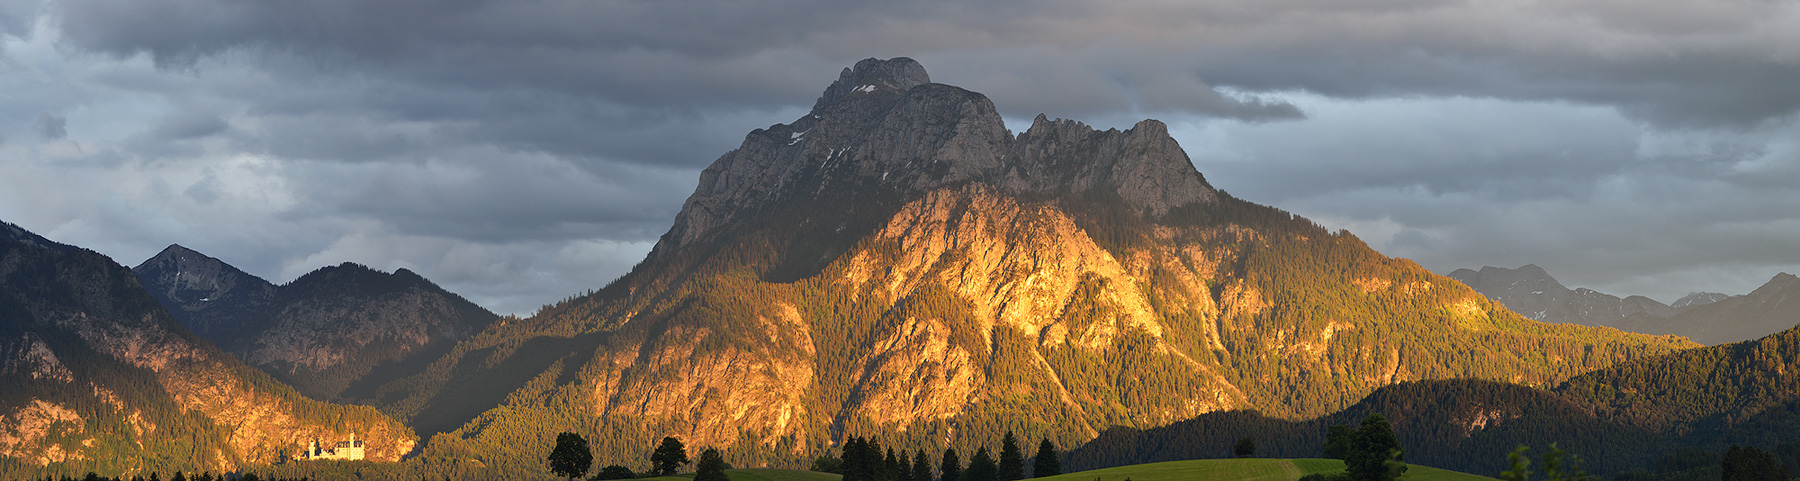 Allgäuer Alpen mit Säuling und Schloss Neuschwanstein